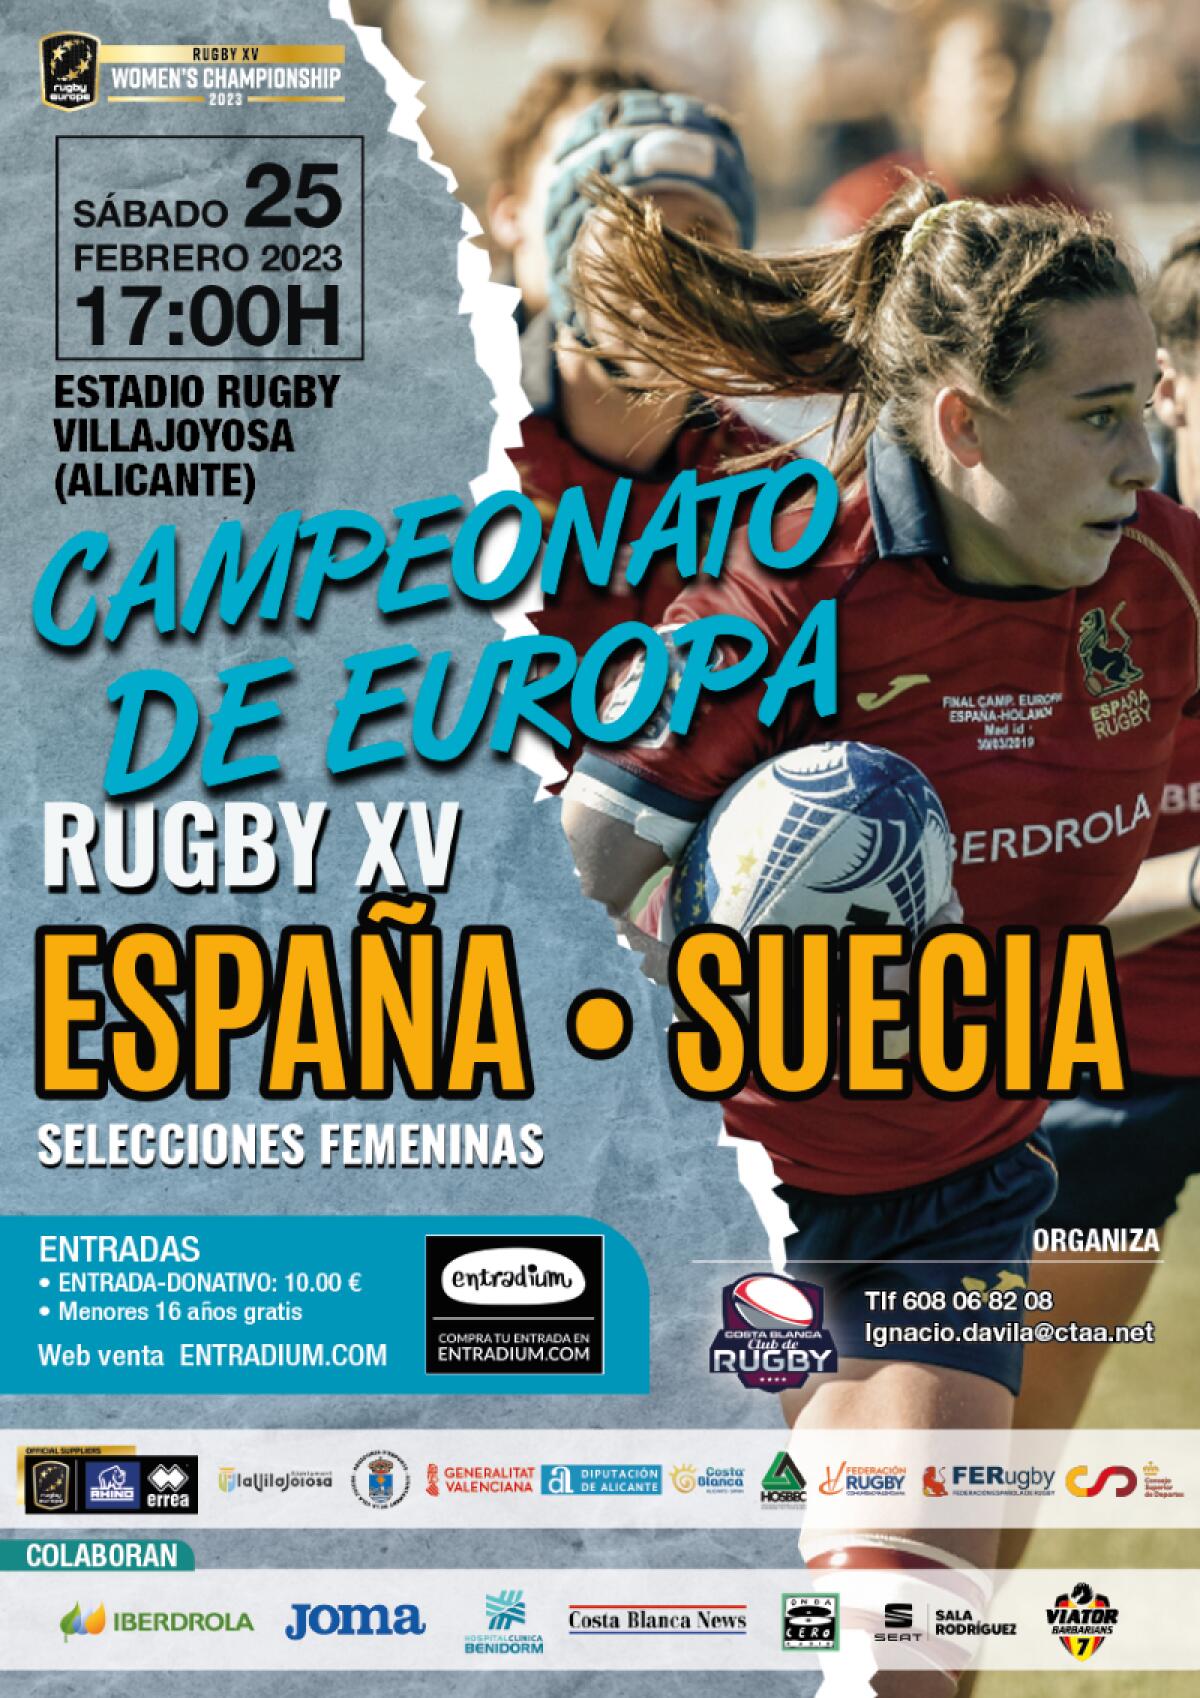 La Vila Joiosa está lista para acoger la Final del Campeonato de Europa de Rugby femenino entre las selecciones de España y Suecia